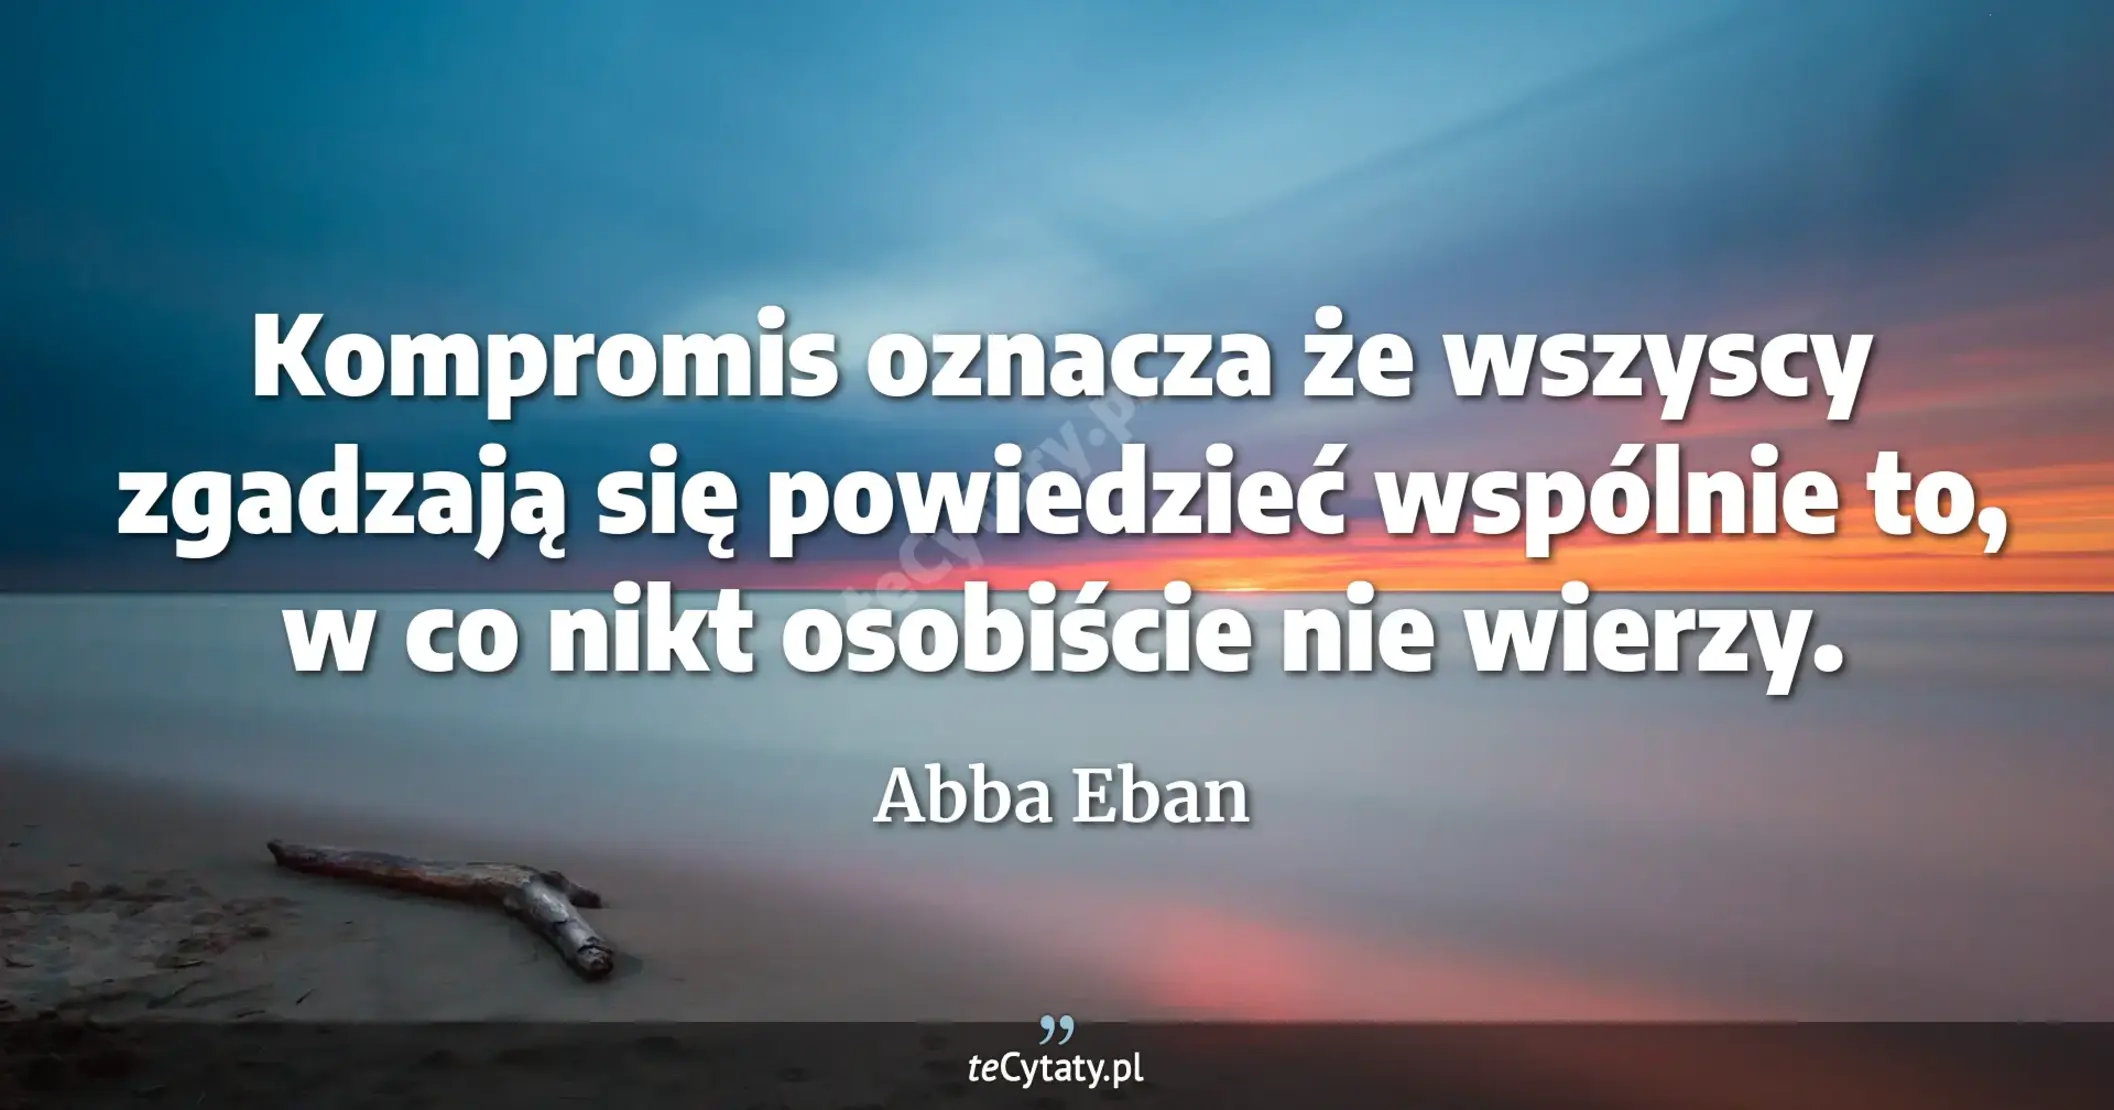 Kompromis oznacza że wszyscy zgadzają się powiedzieć wspólnie to, w co nikt osobiście nie wierzy. - Abba Eban